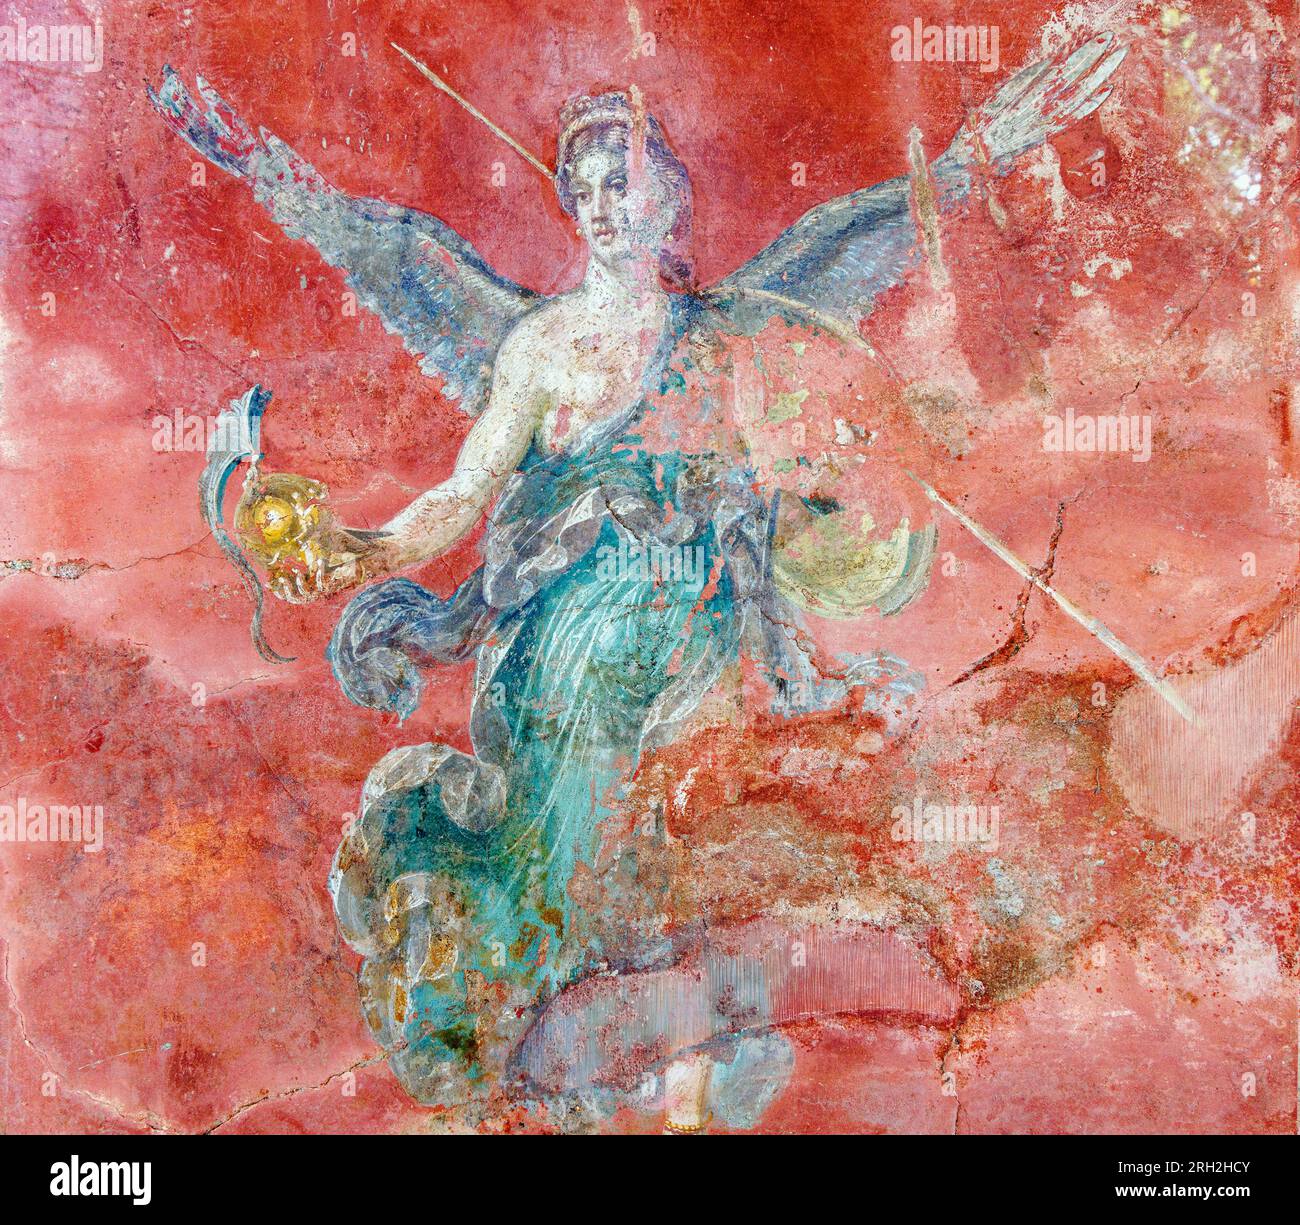 Ausgrabungsstätte Pompeji, Kampanien, Italien. Fresko mit Flügelsieg im großen Palaestra oder Palestra Grande. Pompeji, Herculaneum und Stockfoto